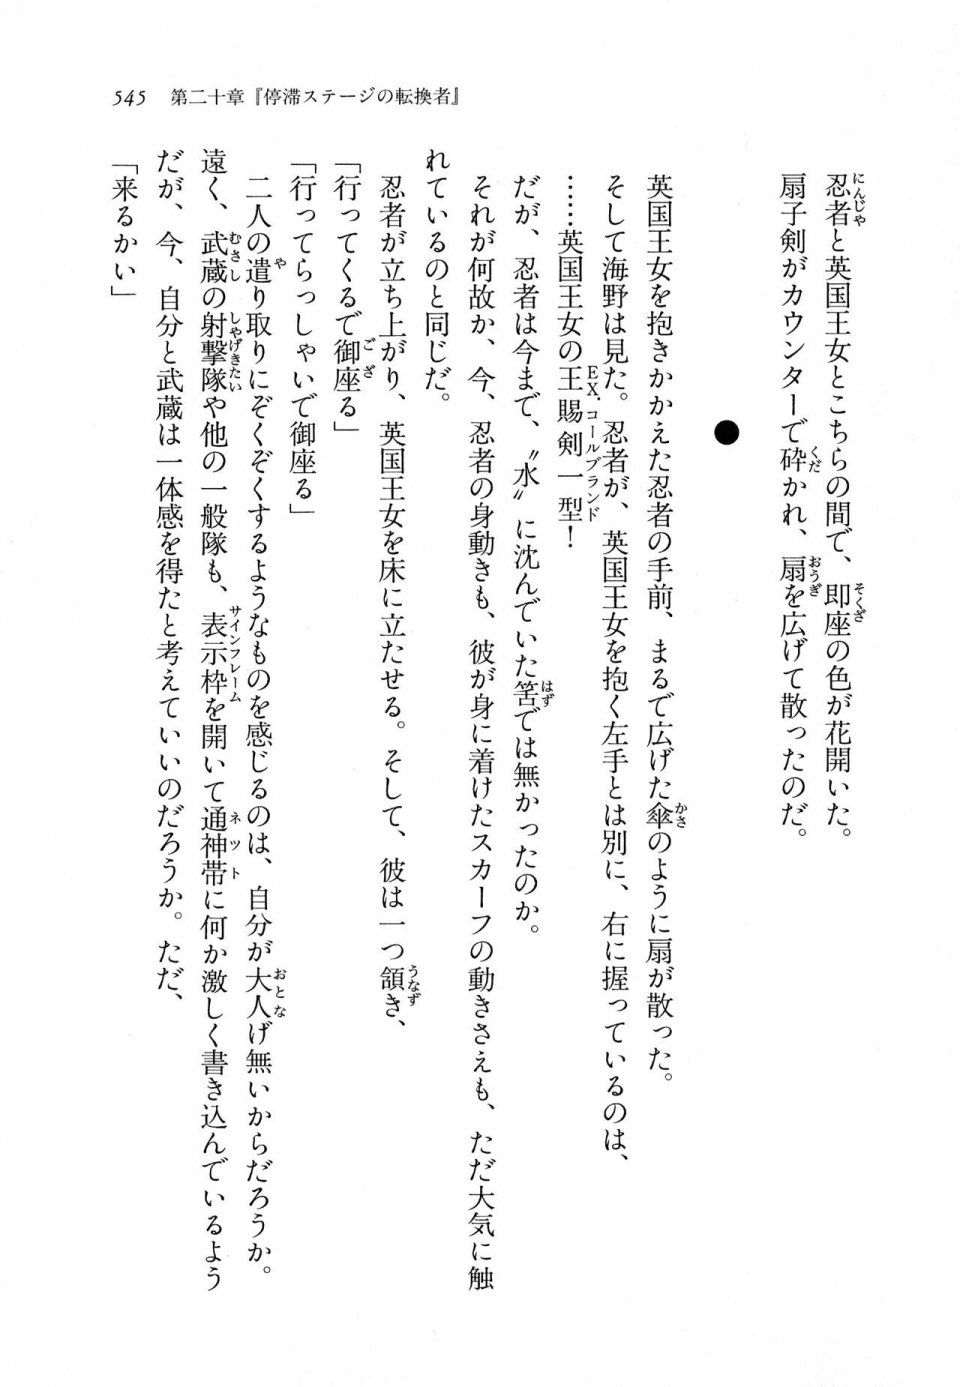 Kyoukai Senjou no Horizon LN Vol 11(5A) - Photo #545